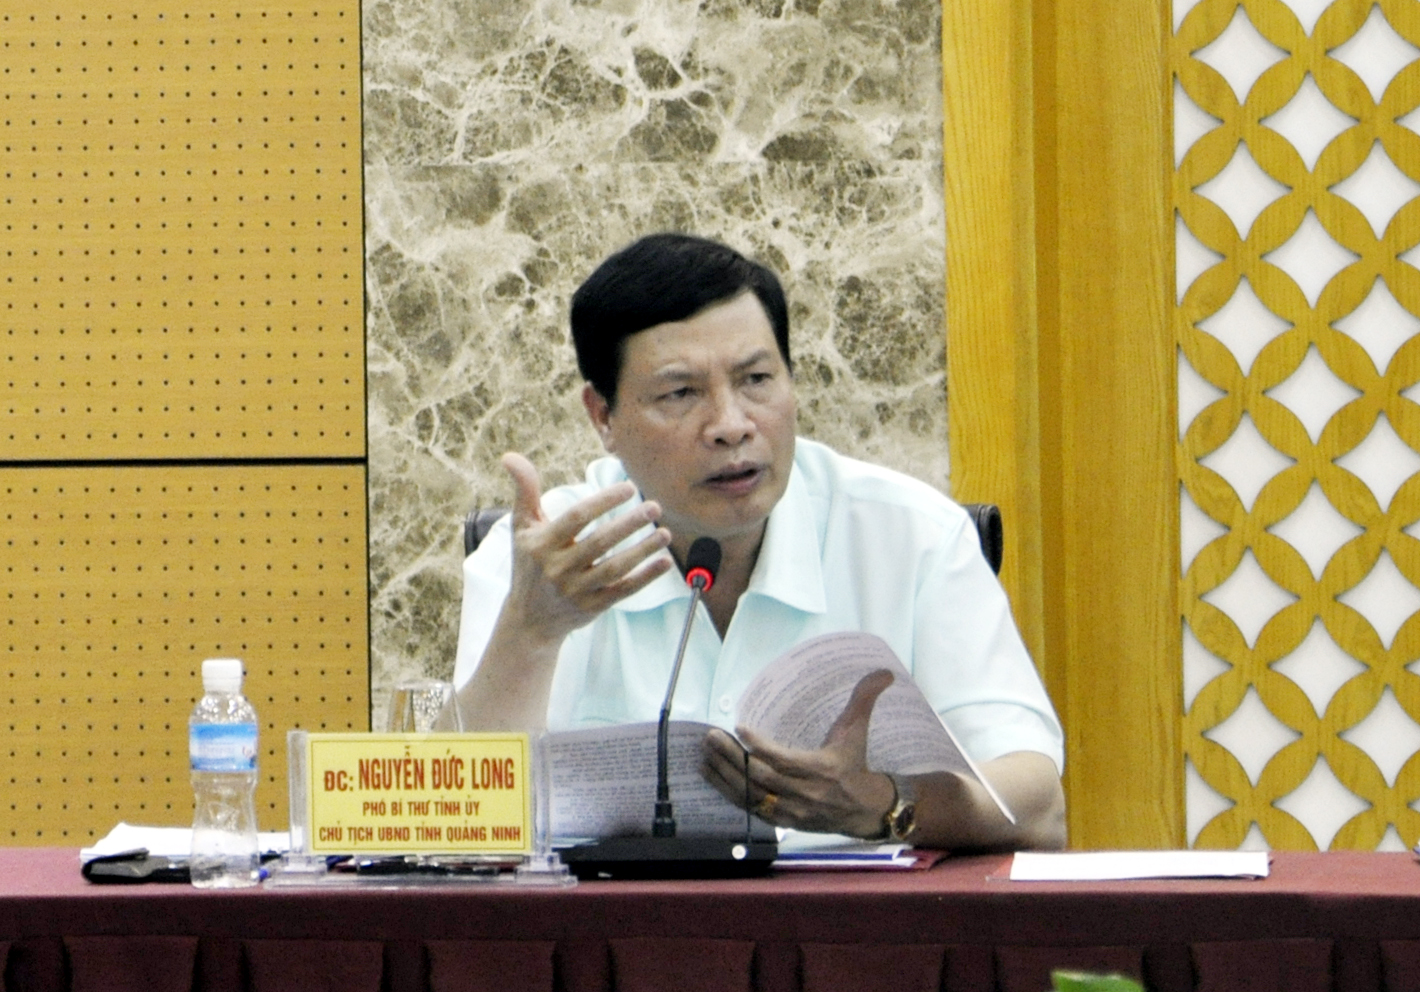 Chủ tịch UBND tỉnh Nguyễn Đức Long phát biểu tại buổi làm việc.